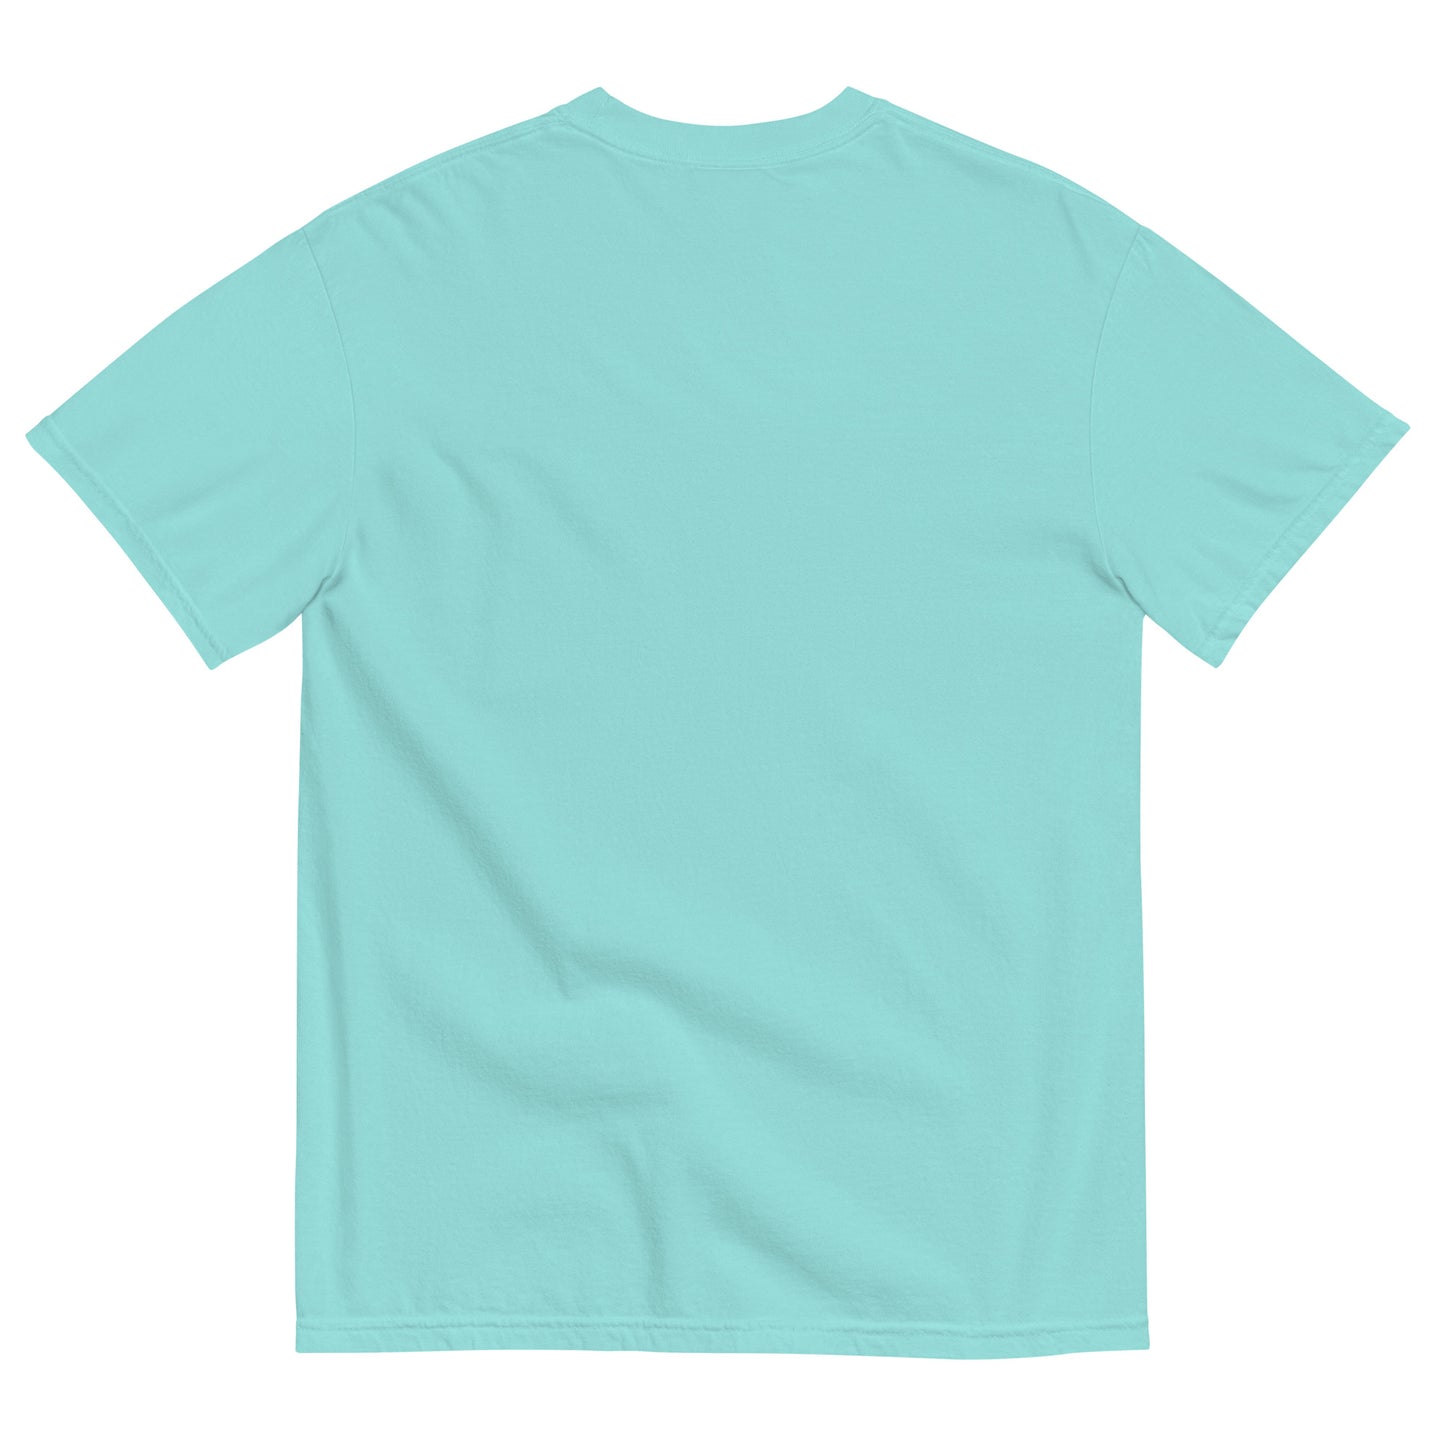 Eat. Sleep. Snooker. Unisex garment-dyed heavyweight t-shirt